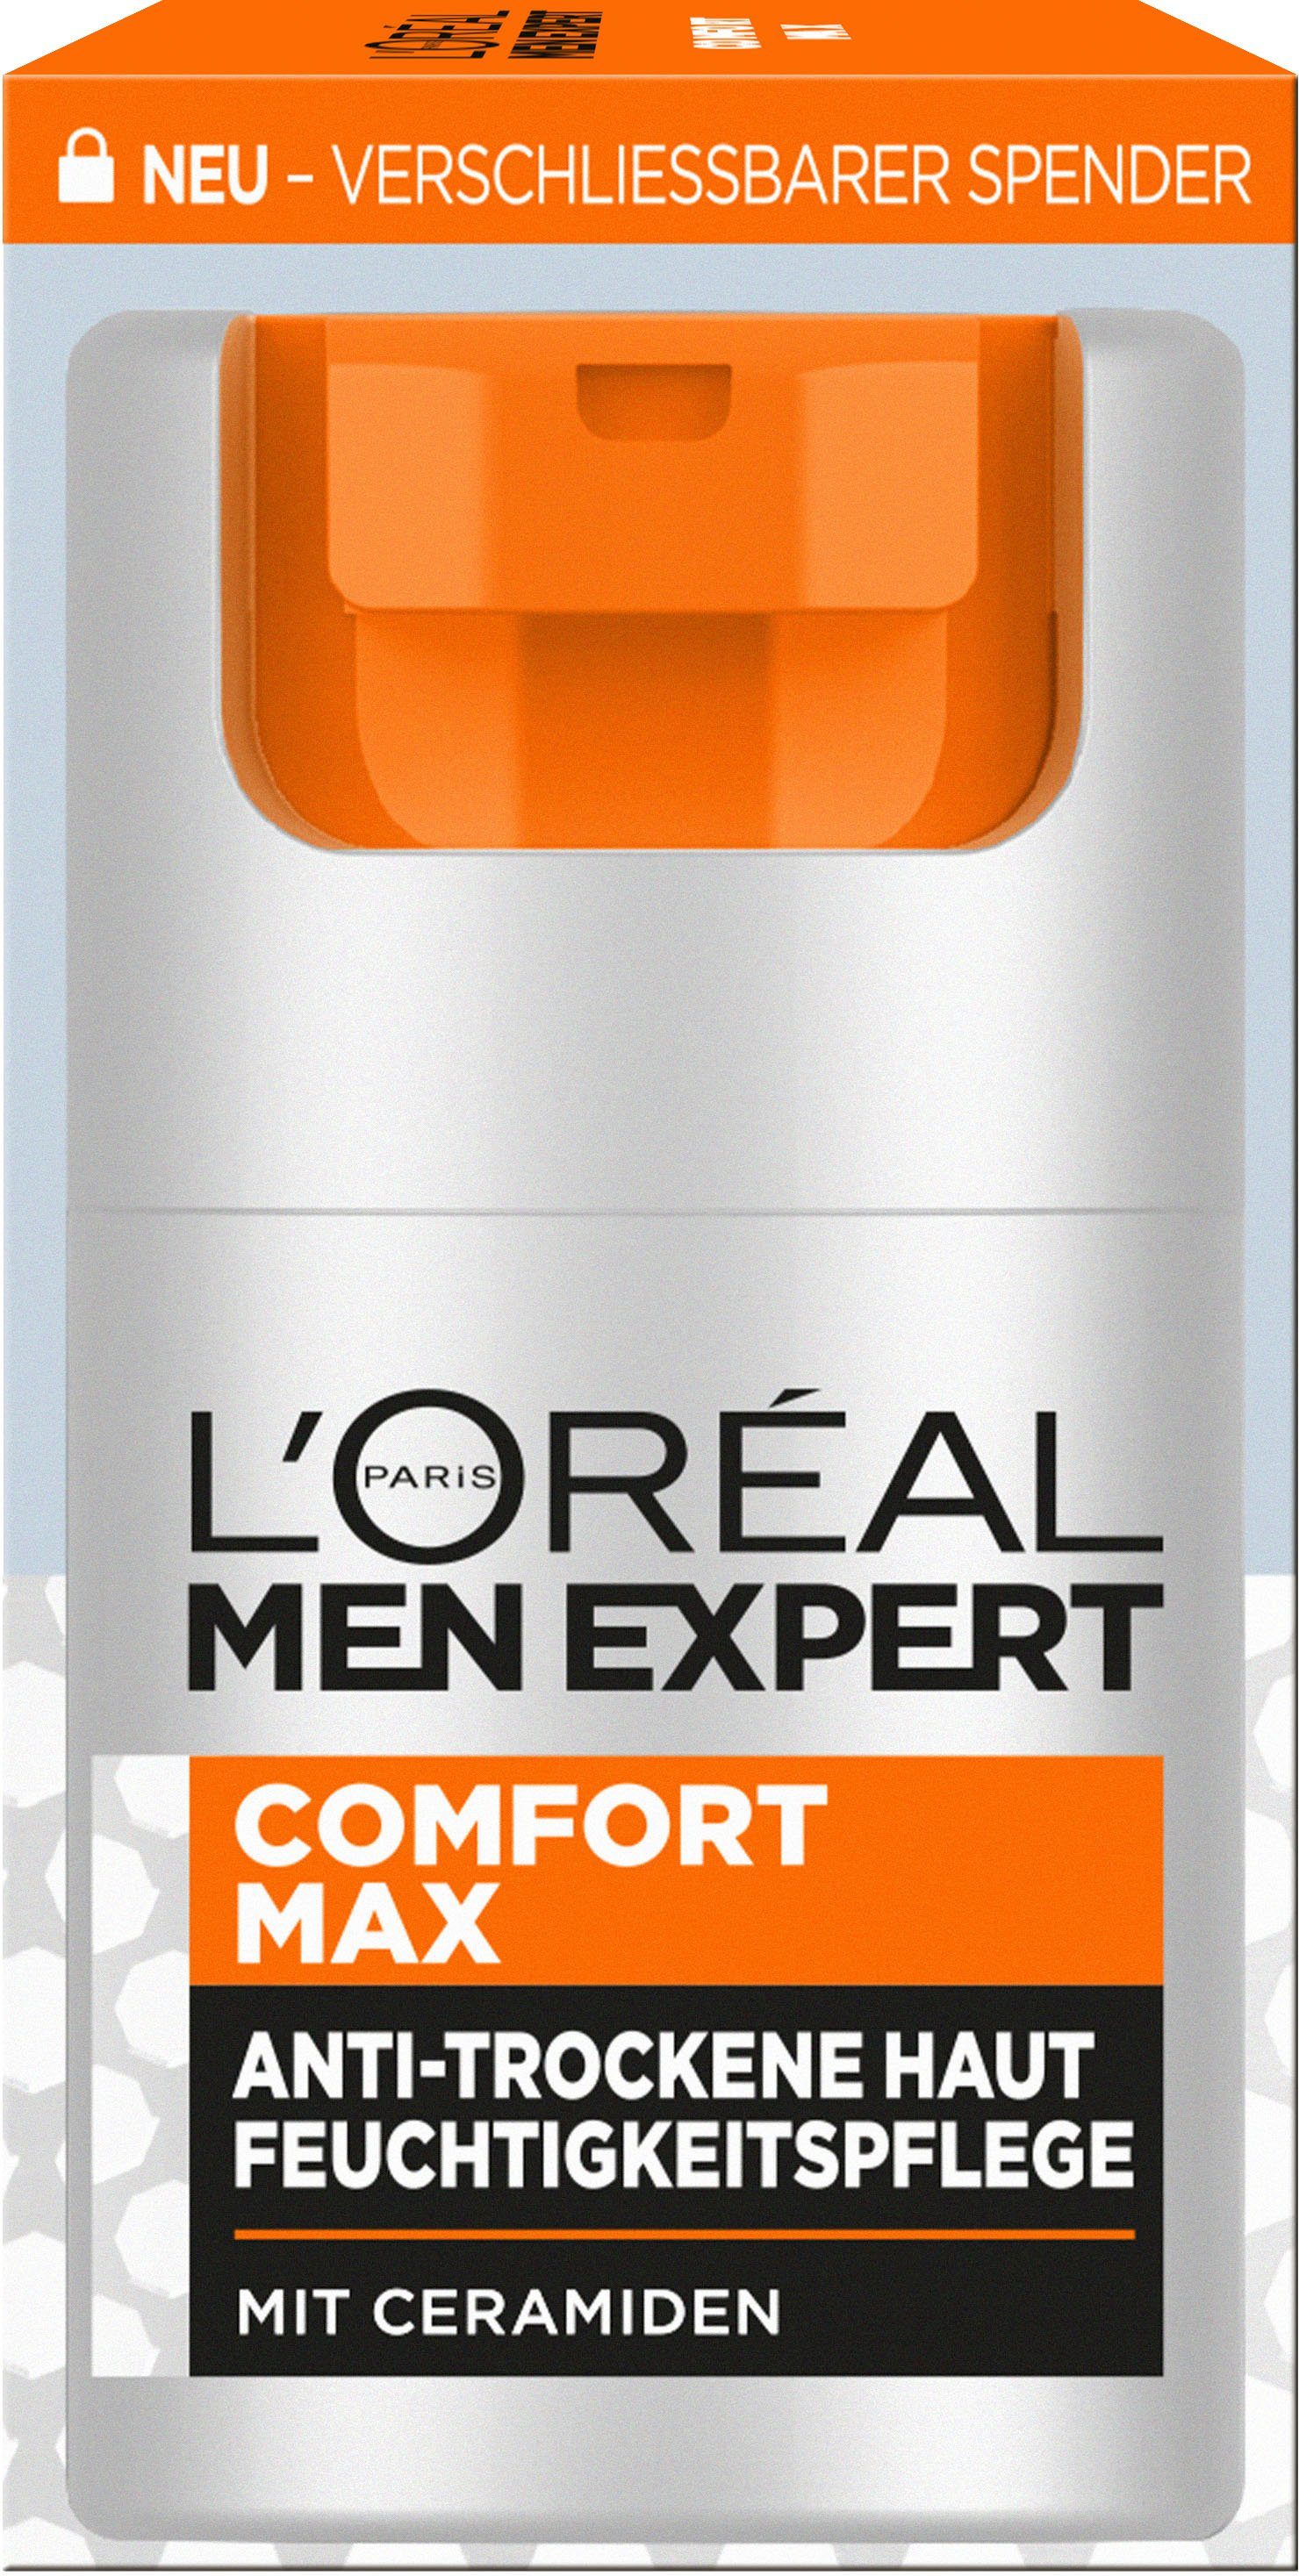 L'ORÉAL PARIS MEN EXPERT Expert L'Oréal Comfort Feuchtigkeitspflege Gesichtsgel Max Men